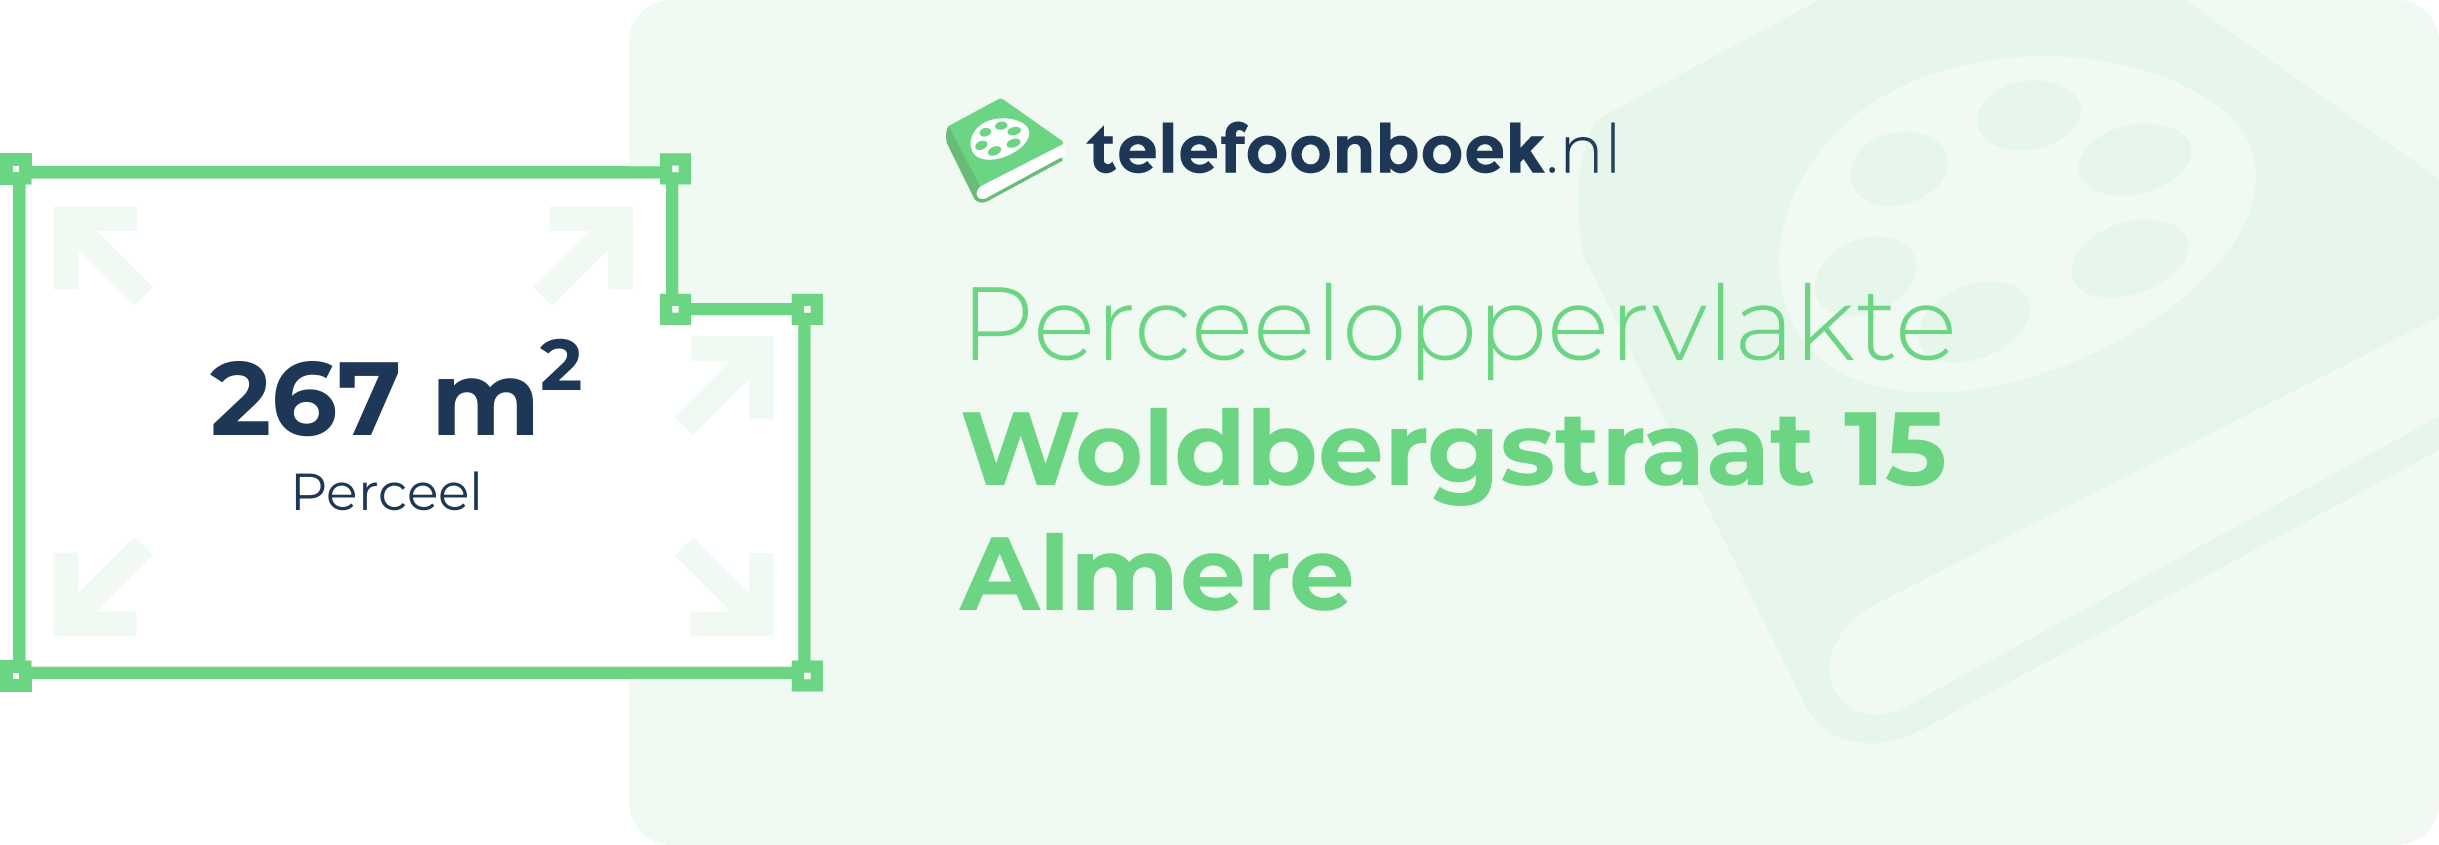 Perceeloppervlakte Woldbergstraat 15 Almere